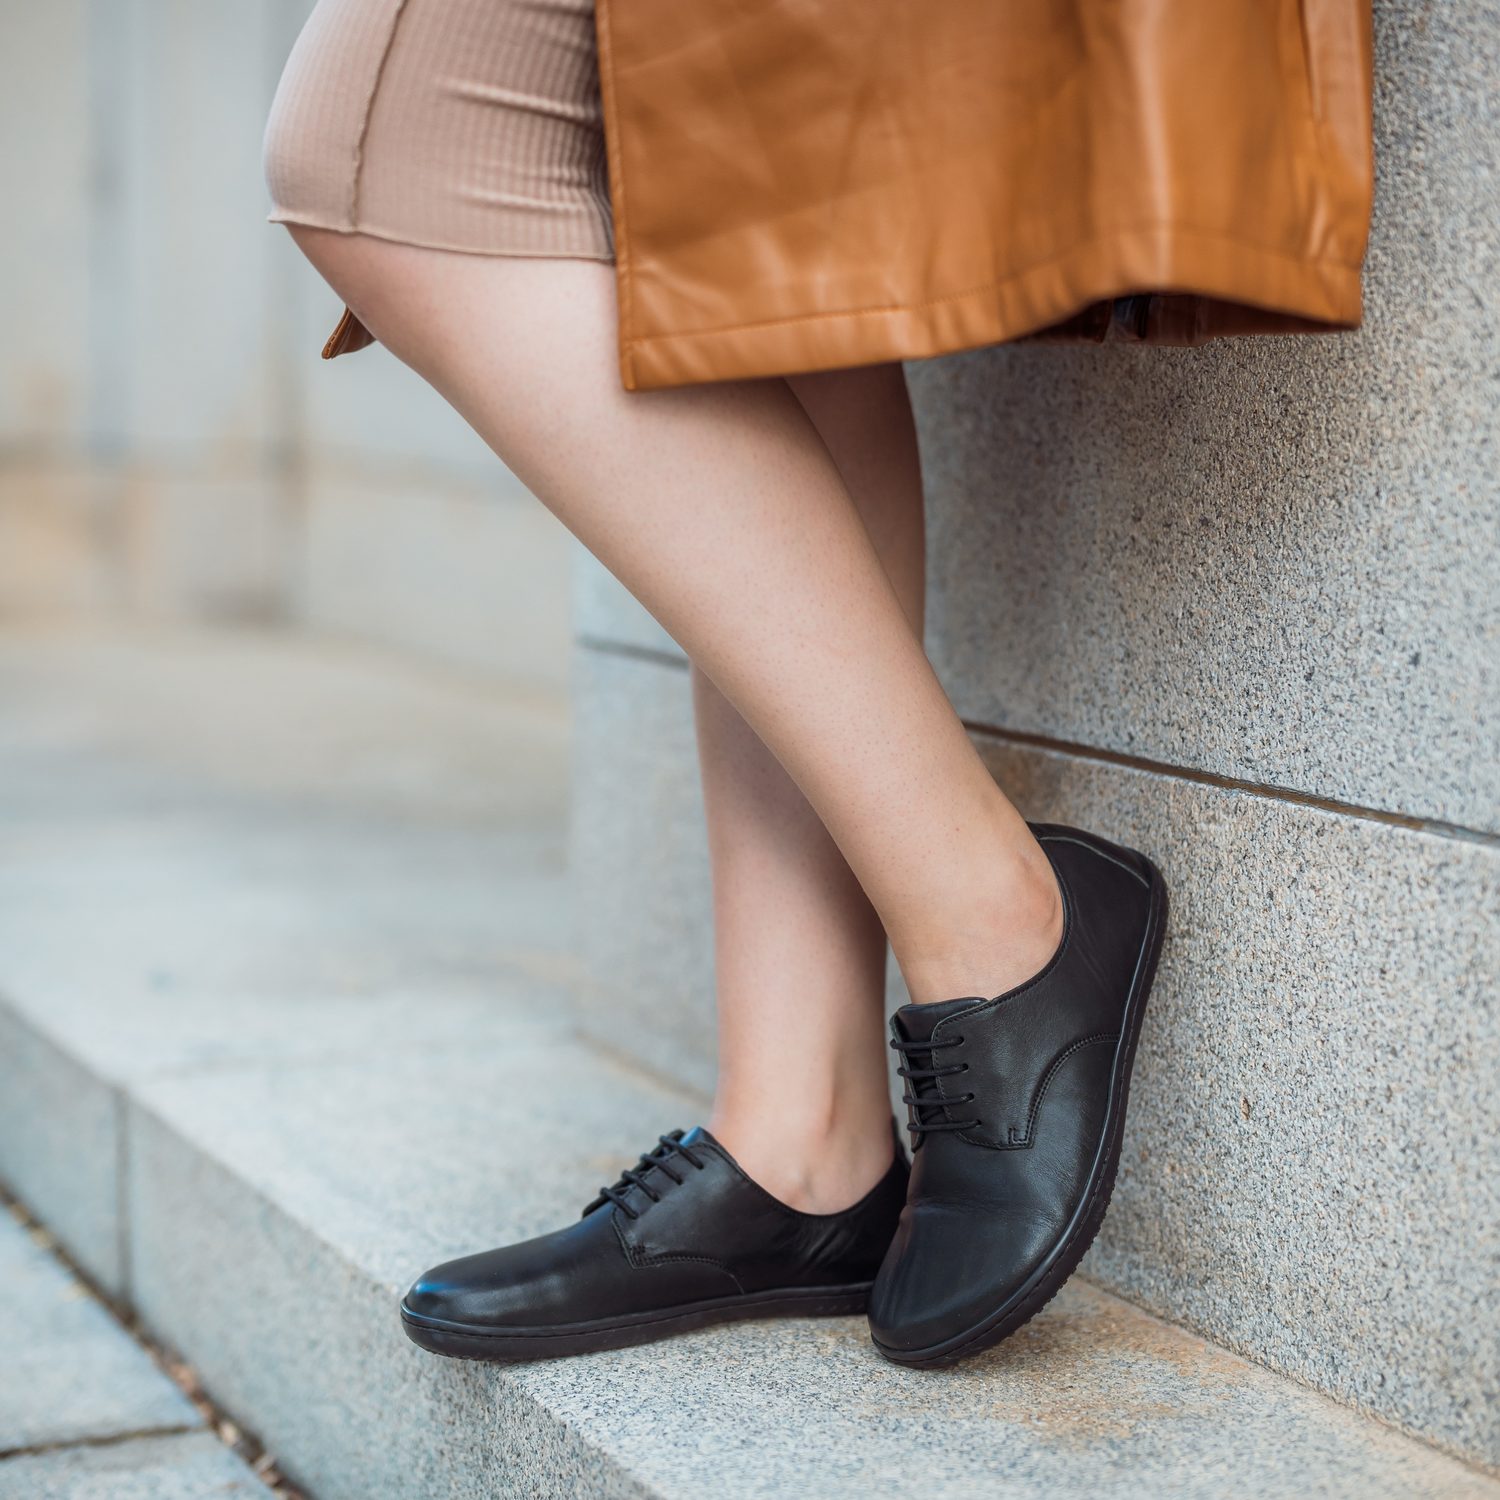 naBOSo – 6 Reasons to Wear Barefoot Shoes – Zažijte pohodlí barefoot bot.